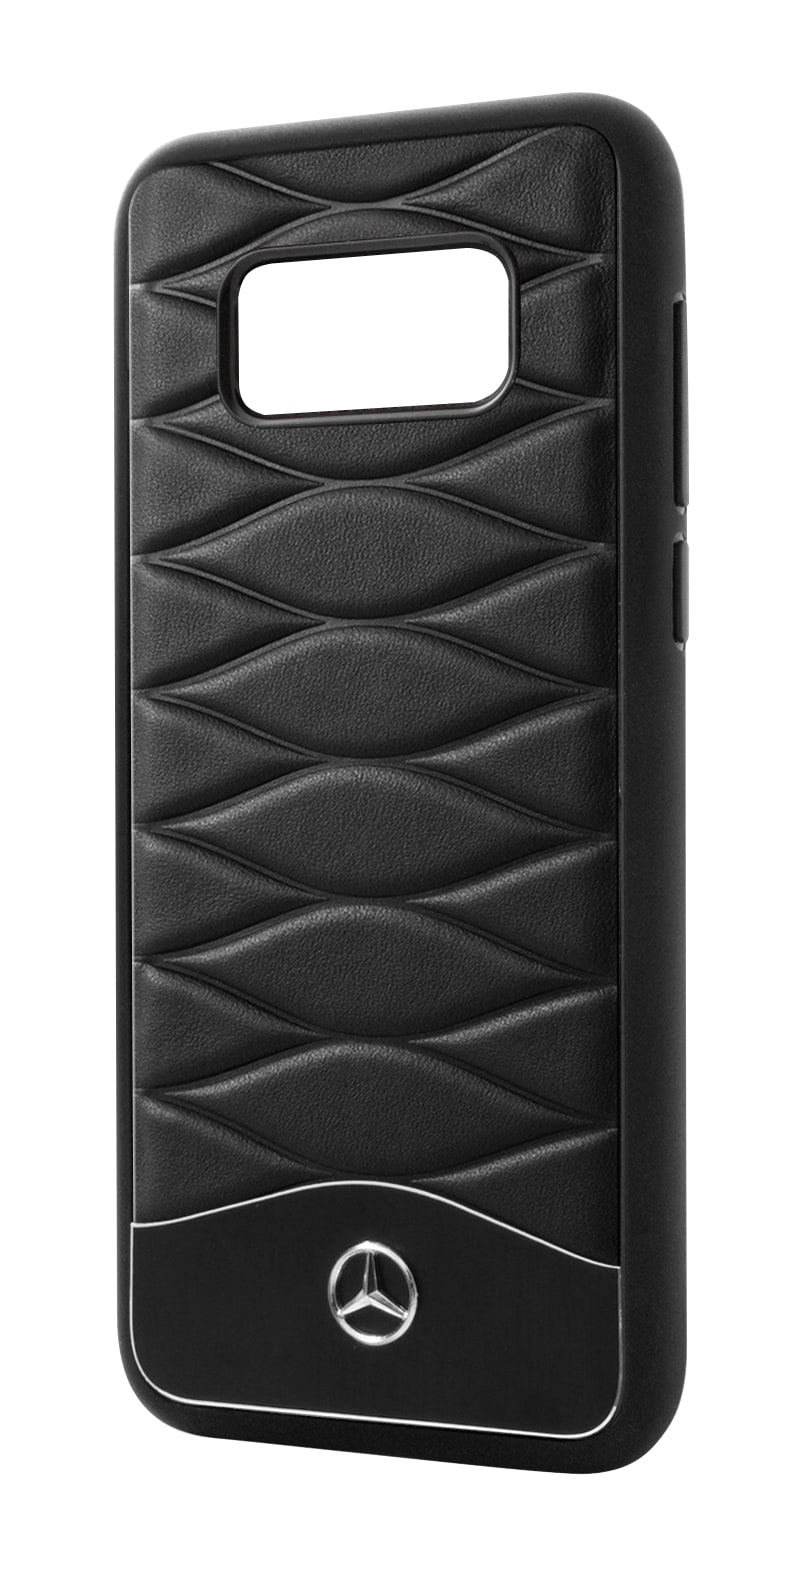 Hülle für Samsung Galaxy S8 - schwarz, Polycarbonat / Rindleder